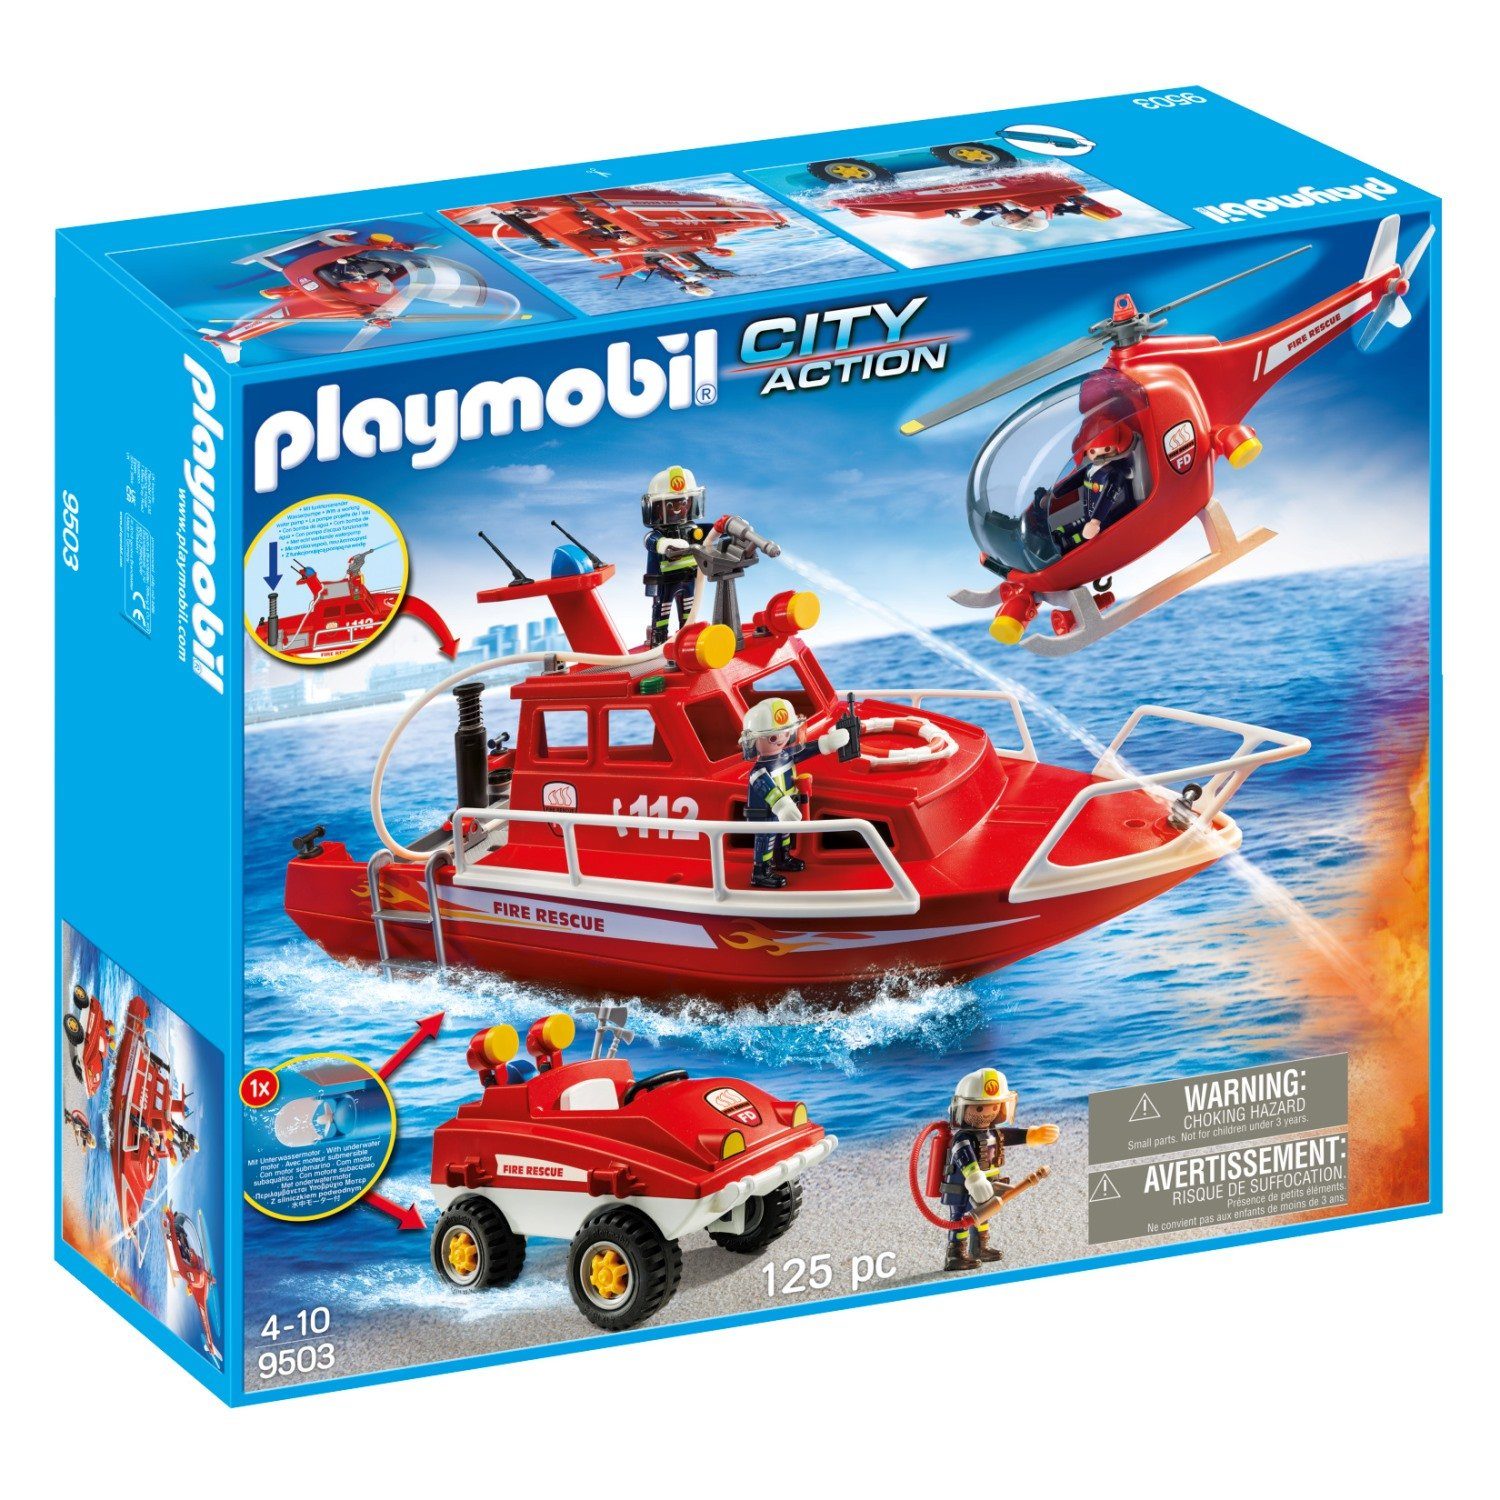 Playmobil® Spielwelt City Action Feuerwehr-Boot Hubschrauber 9503, Fahrzeug  Pumpe Unterwasser-Motor Hubschrauber Rettung Feuerwehr-Boot  Spielzeug-Figuren Lösch-Aktion